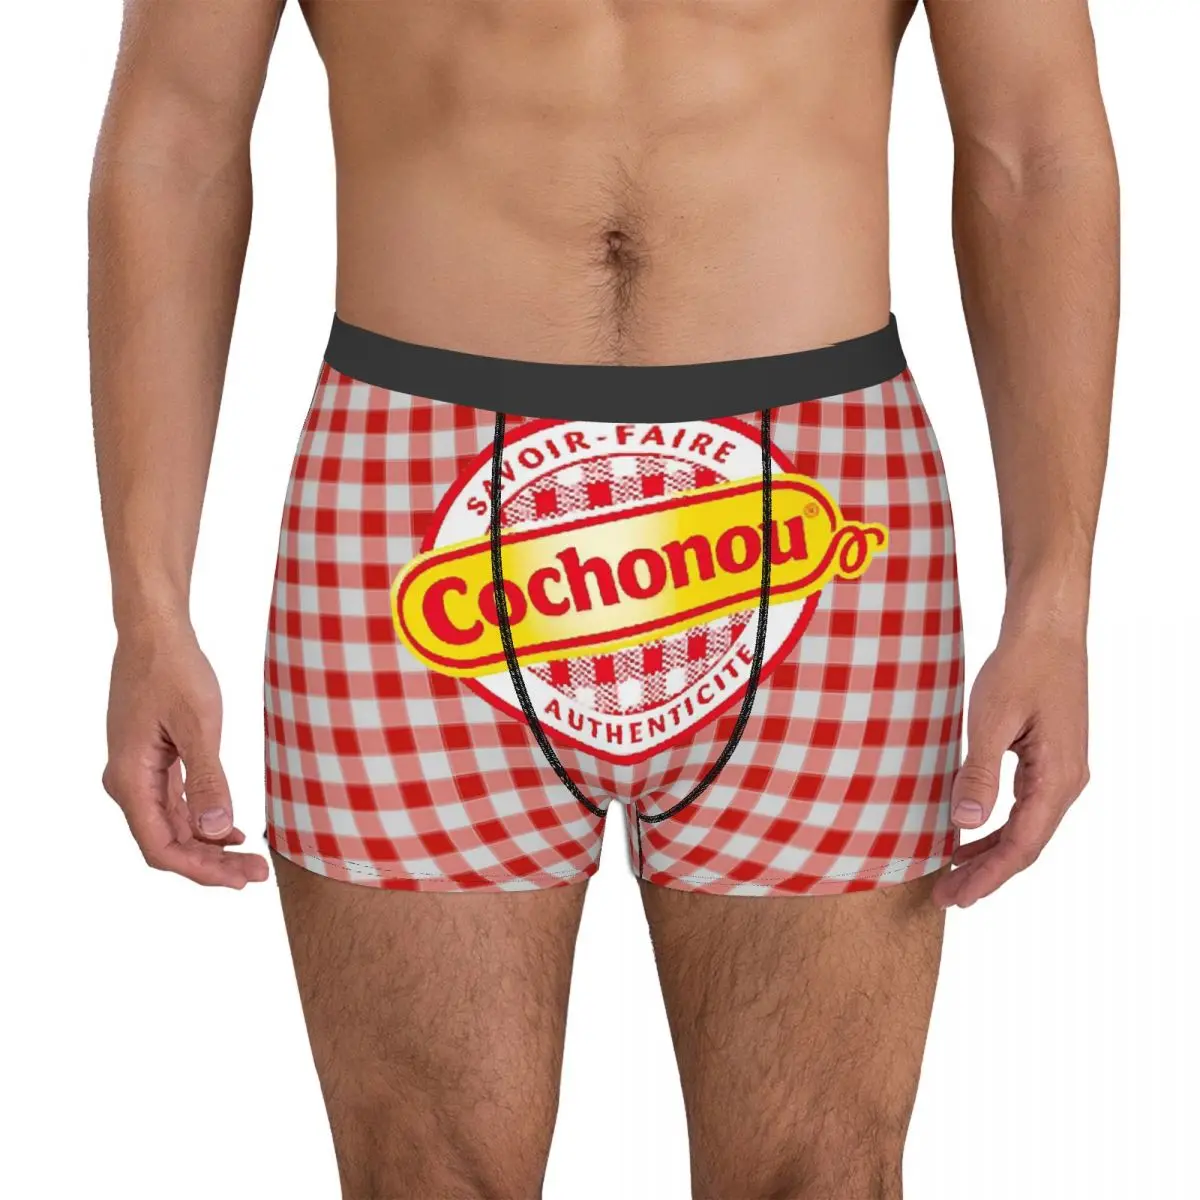 Pig Cochonou-Calzoncillos Bóxer con Logo 1 para hombre, ropa interior muy transpirable, pantalones cortos estampados de alta calidad, regalos de cumpleaños